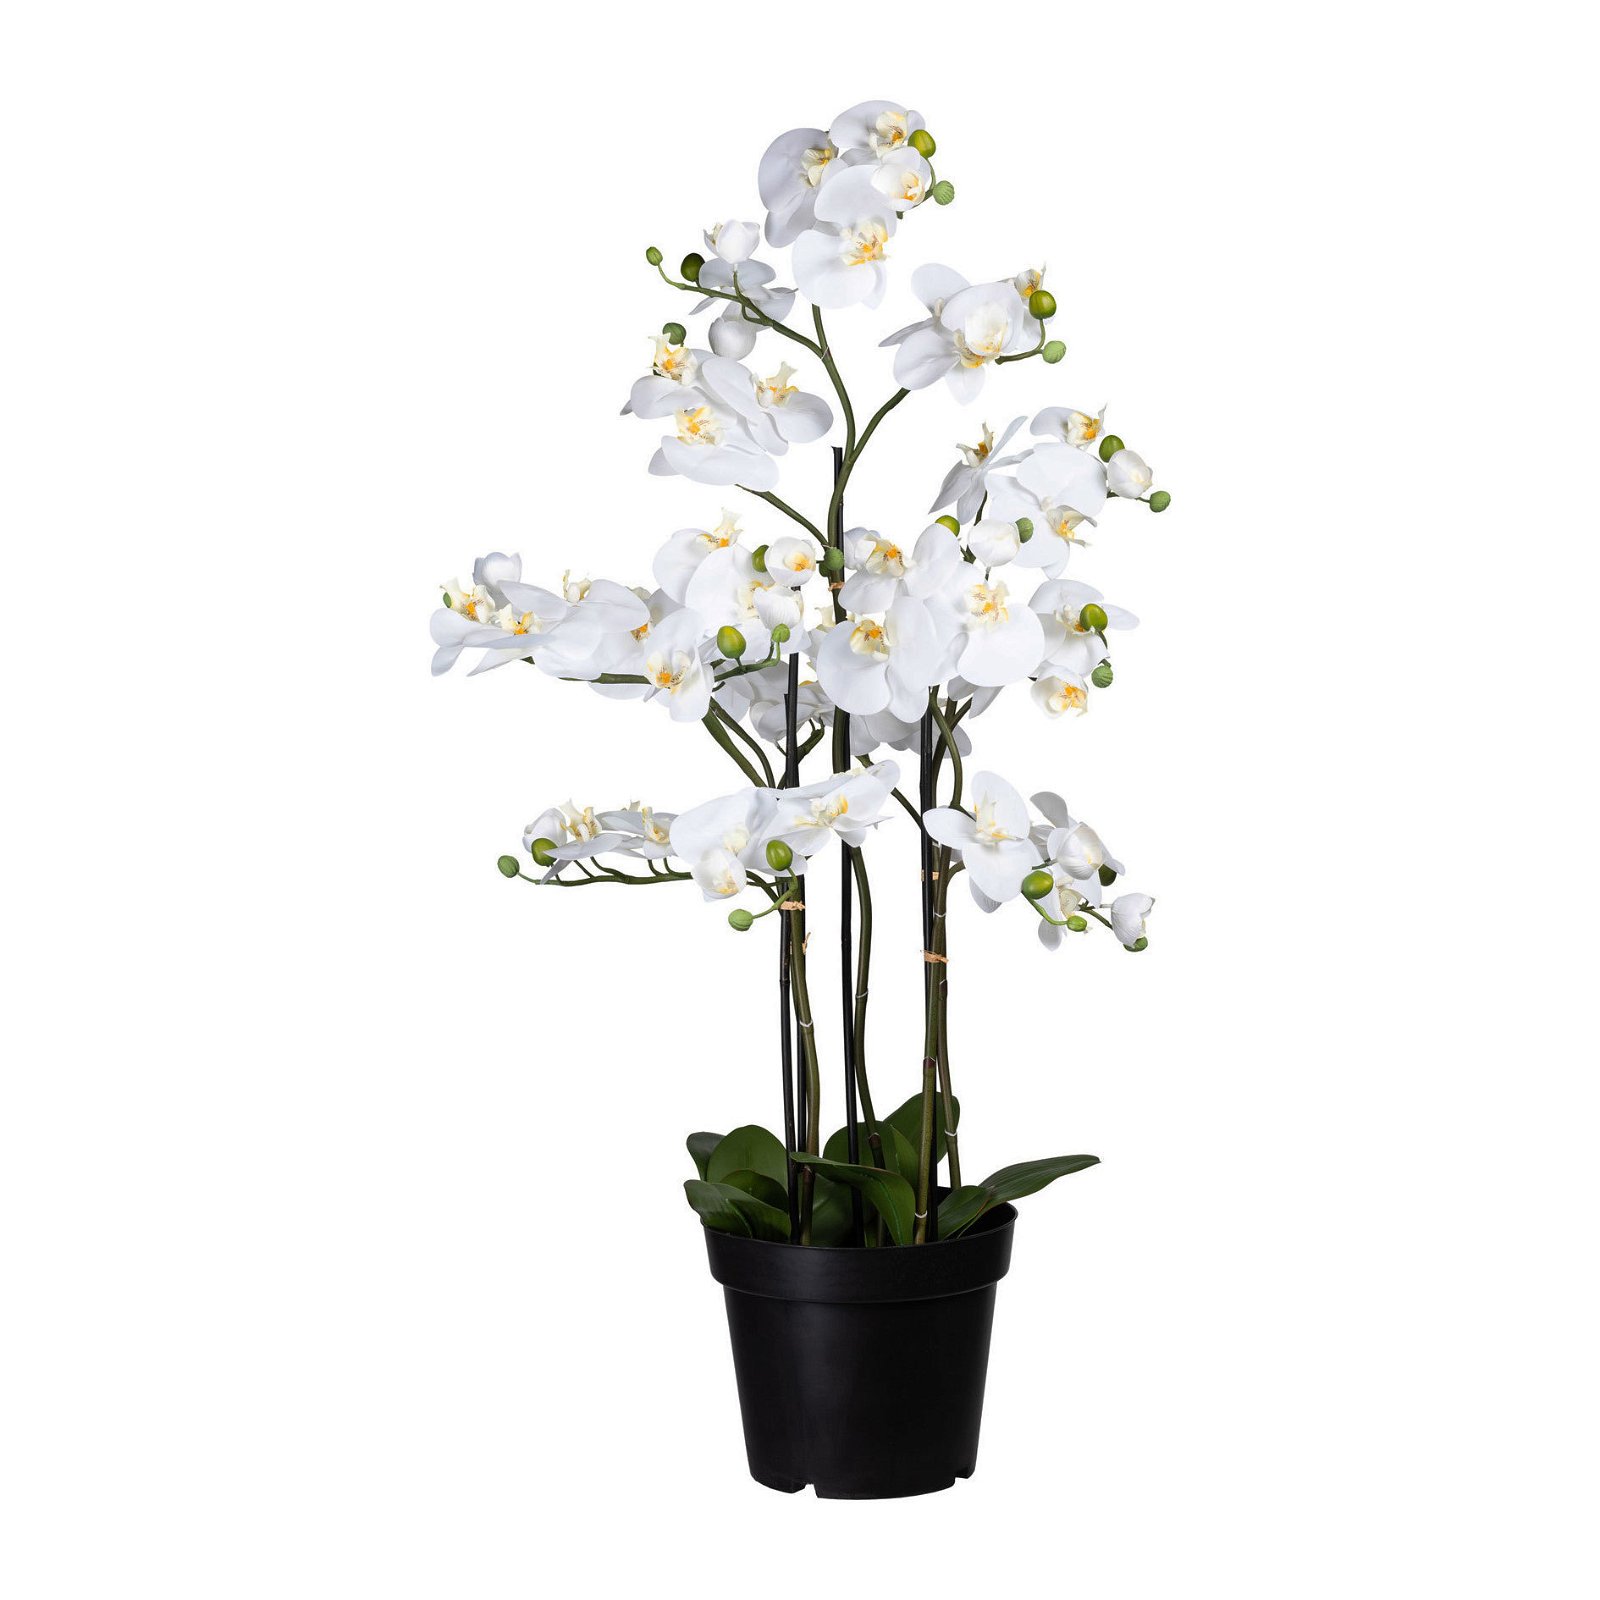 Künstliche Orchidee, Phalaenopsis, 13 Rispen, weiße Blüten, ca. 110 cm, 26 x 22 cm Kunststofftopf, mit Erde